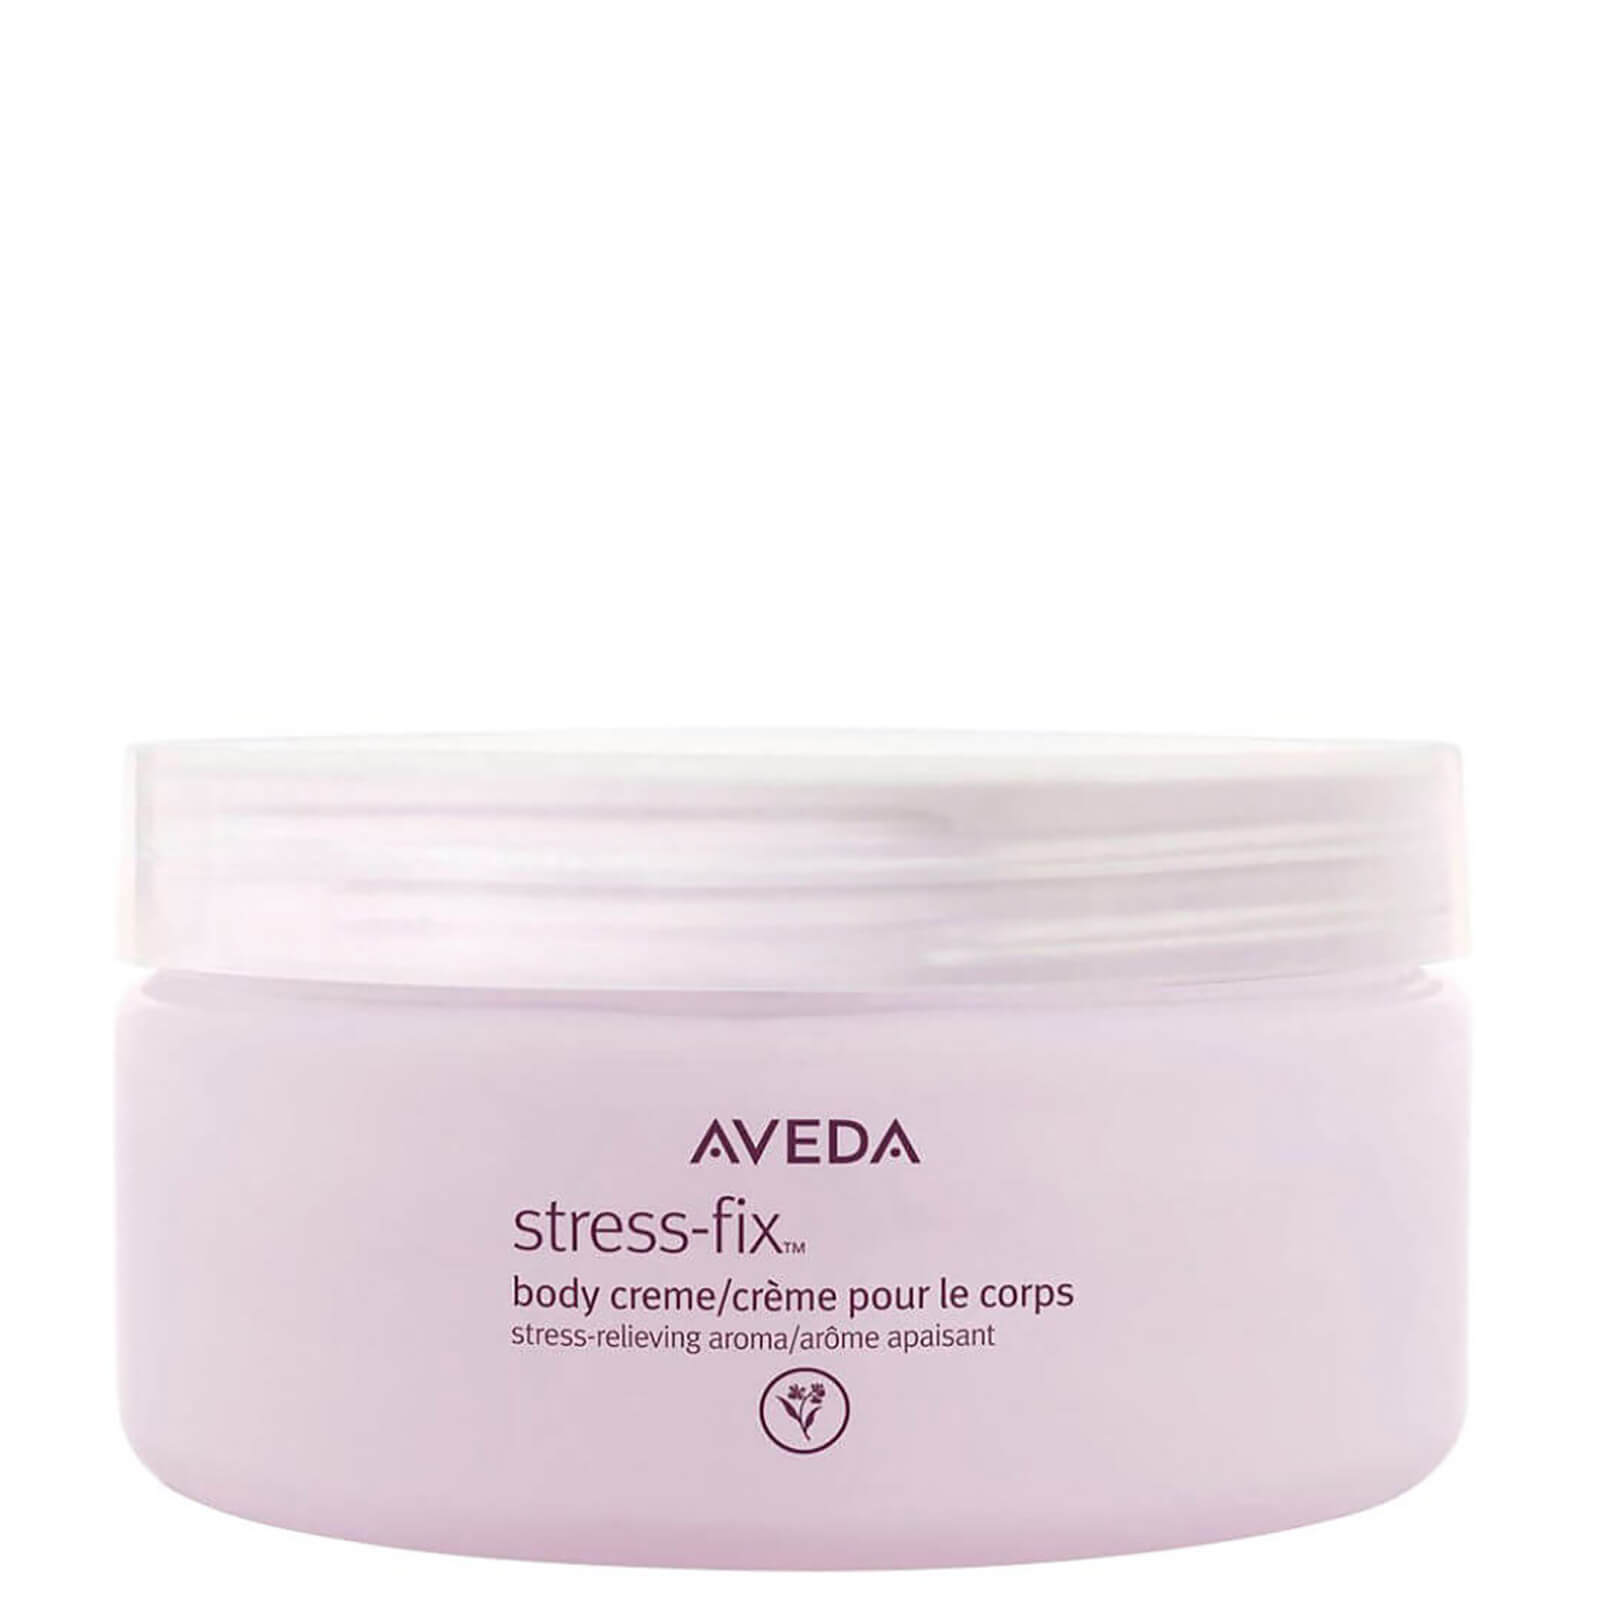 Crema corporal Aveda Stress-Fix 200ml